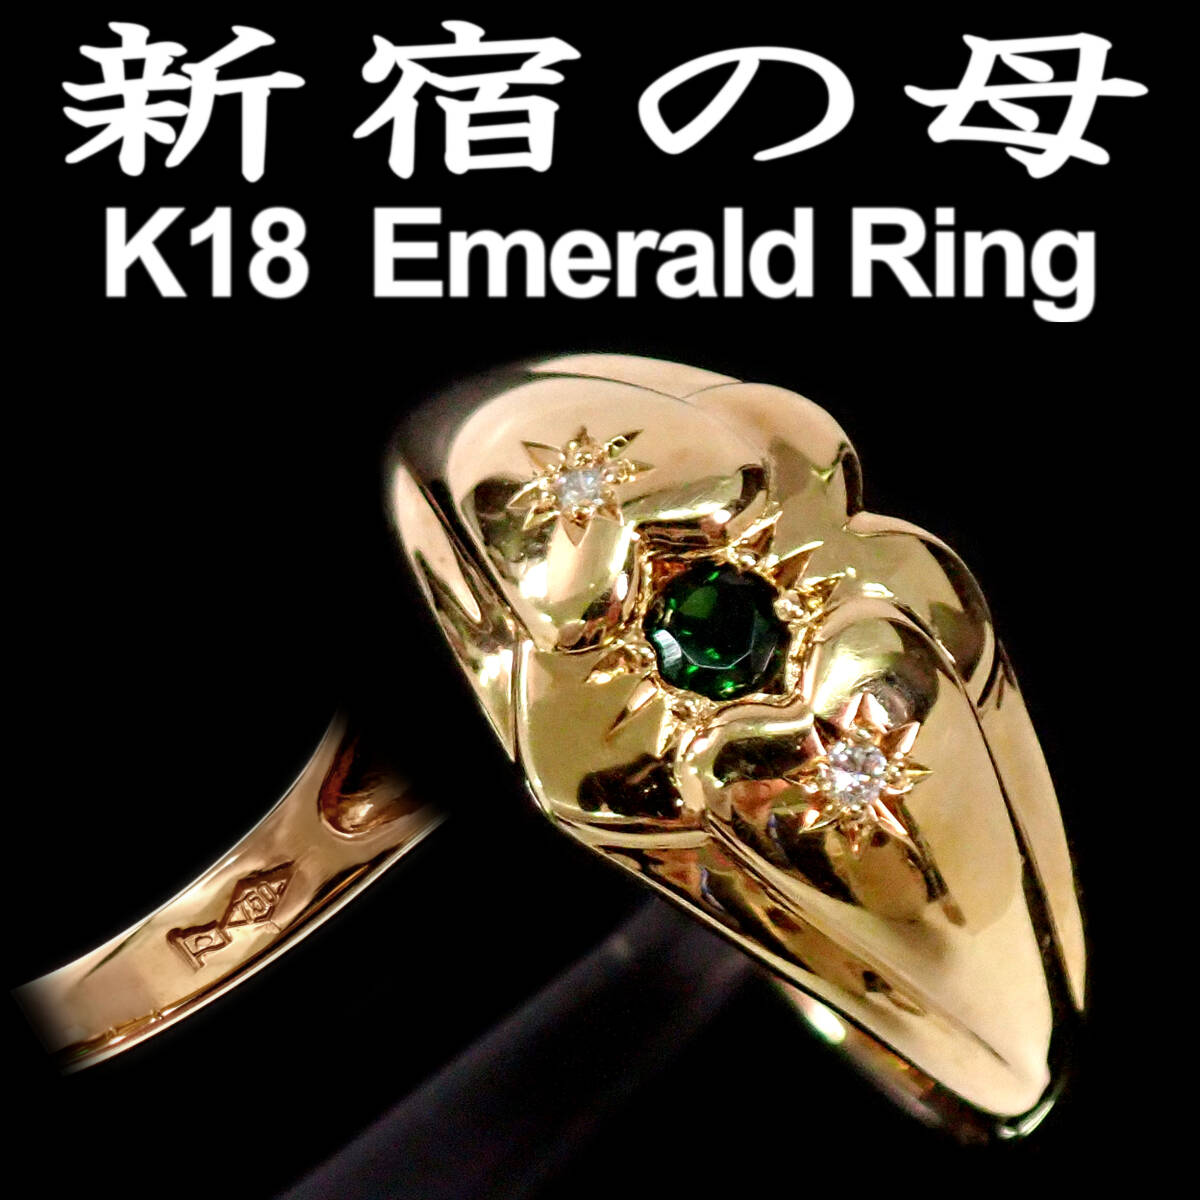 新宿の母 K18 Emerald Yellow Gold Ring 18号 エメラルド イエローゴールド リング